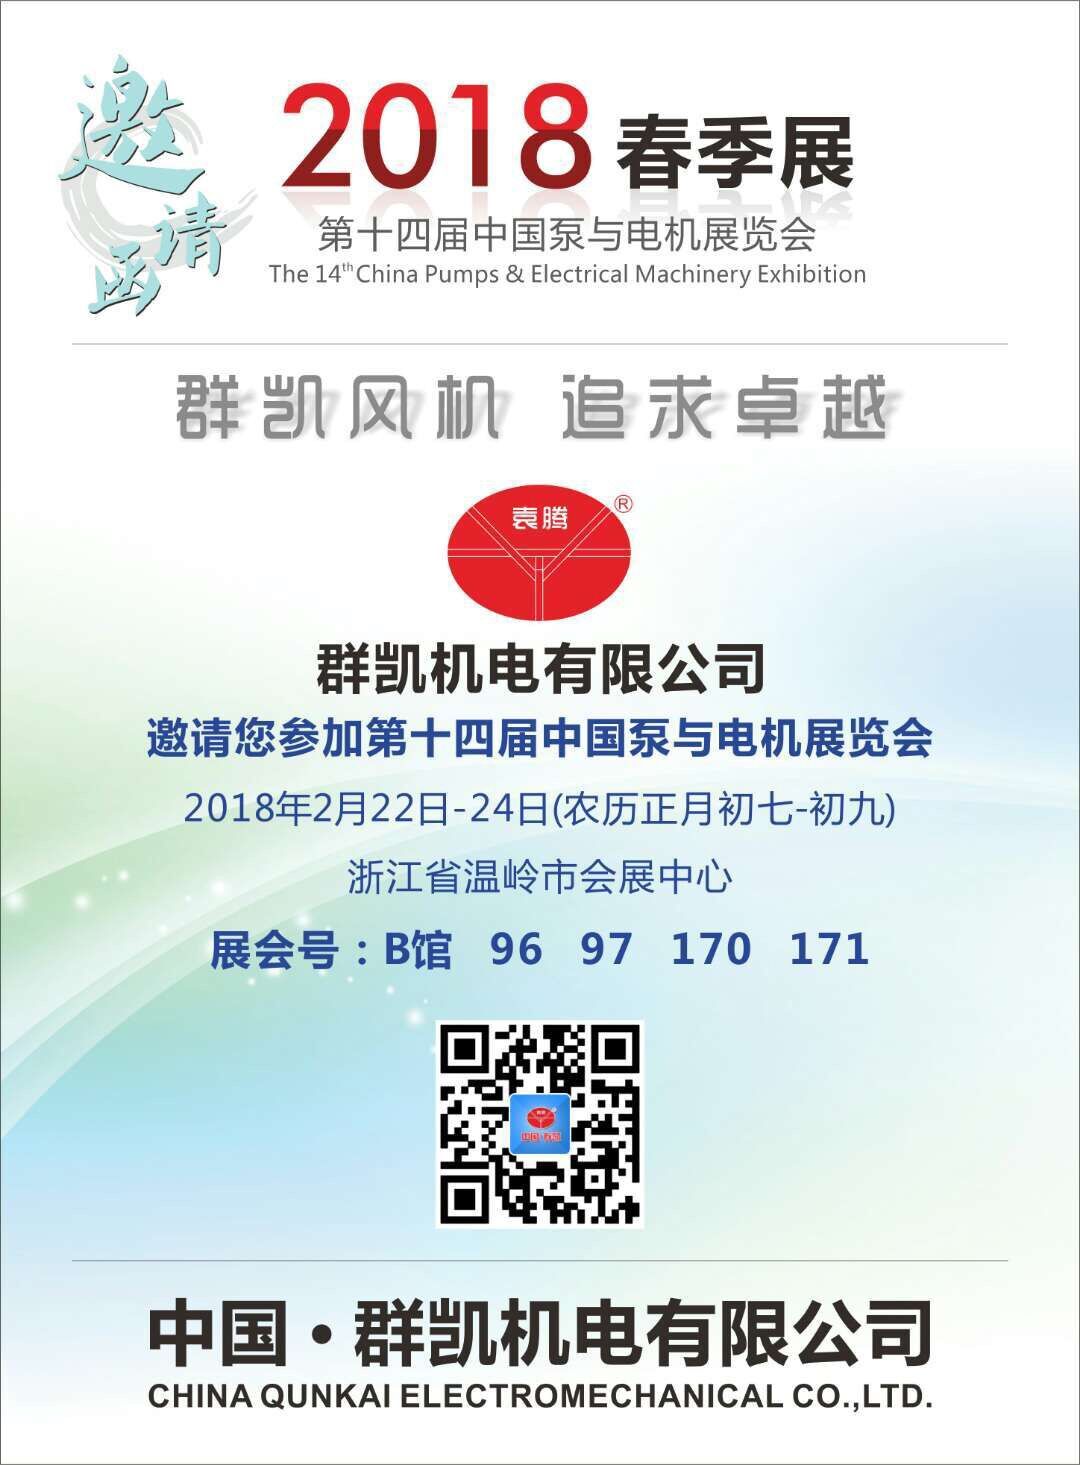 群凯邀请您参加第十四届中国泵与电机展览会